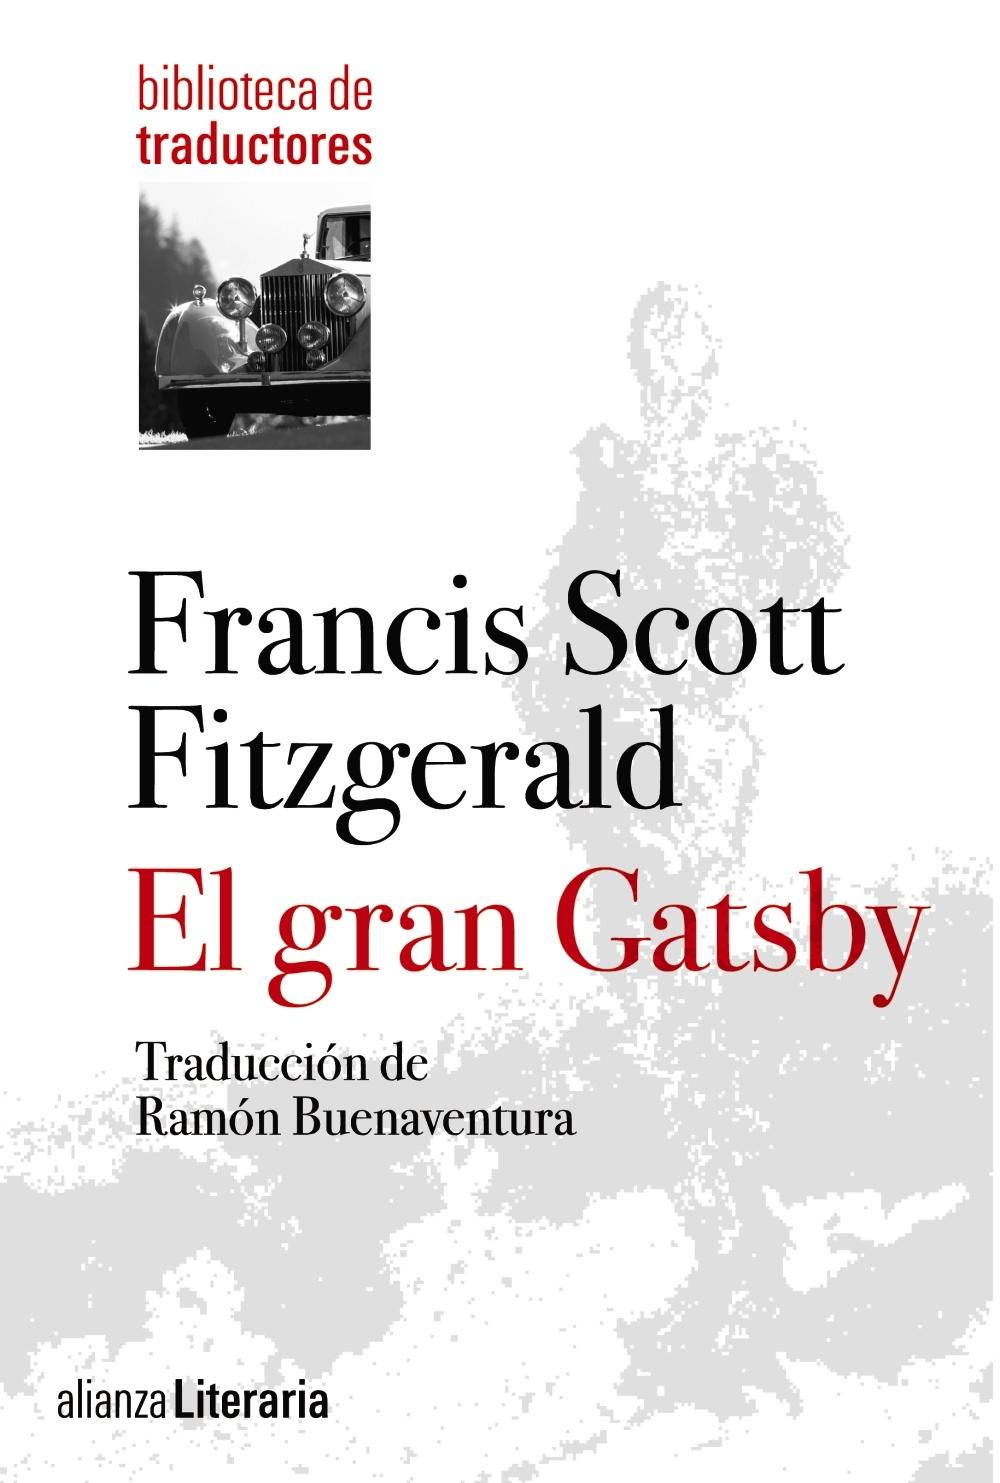 El Gran Gatsby "Traducción de Ramón Buenaventura". 